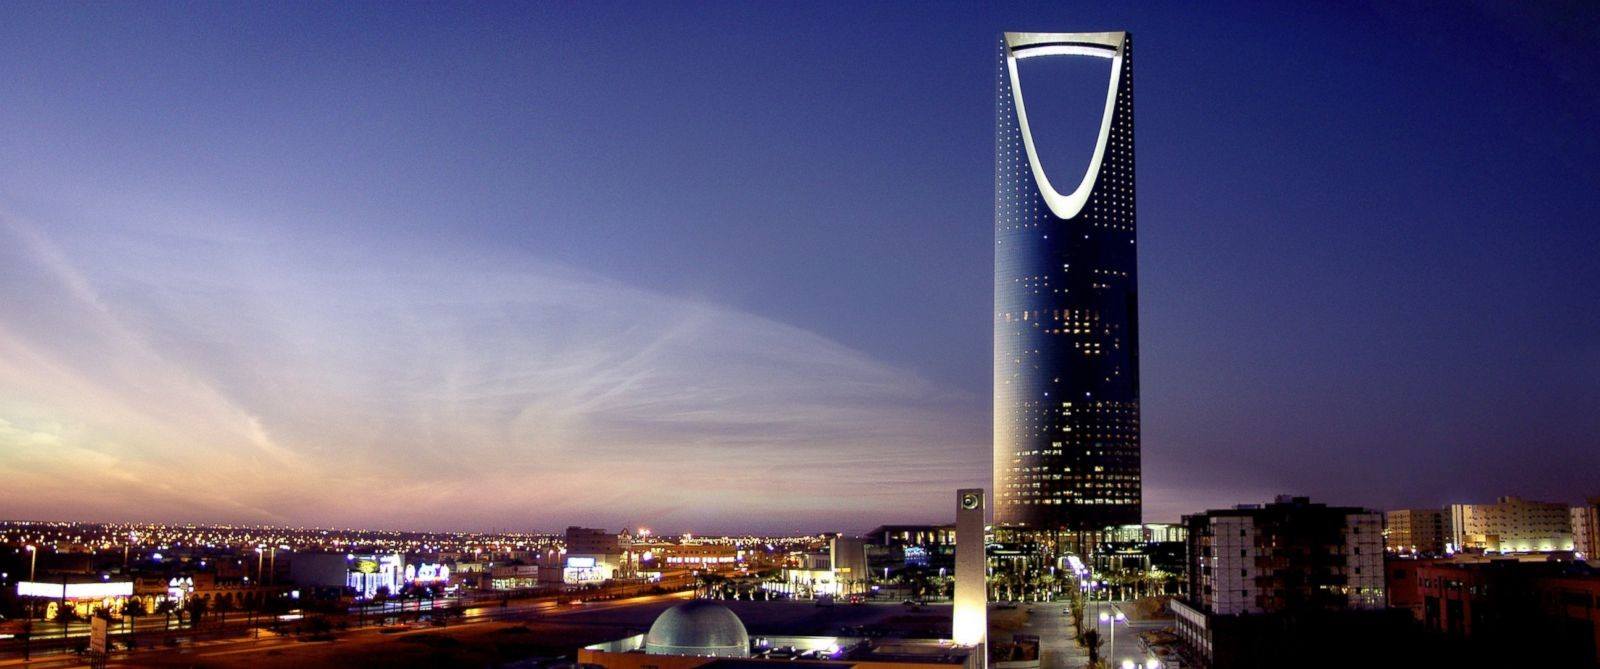 قائمة أقوى الشركات السعودية